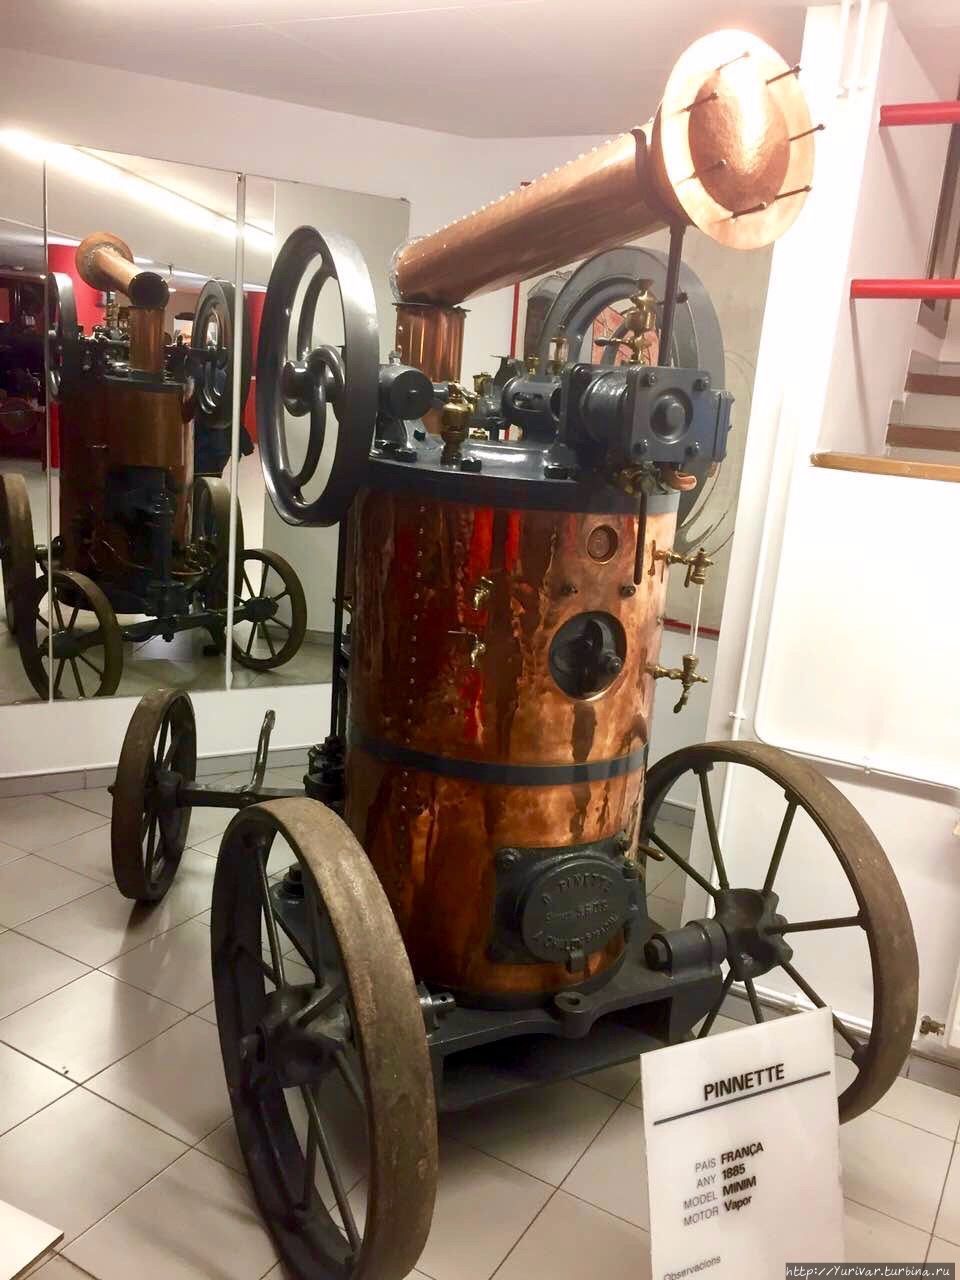 Самый старый экспонат музея — паровой двигатель Pinnette, 1885 г. Энкамп, Андорра